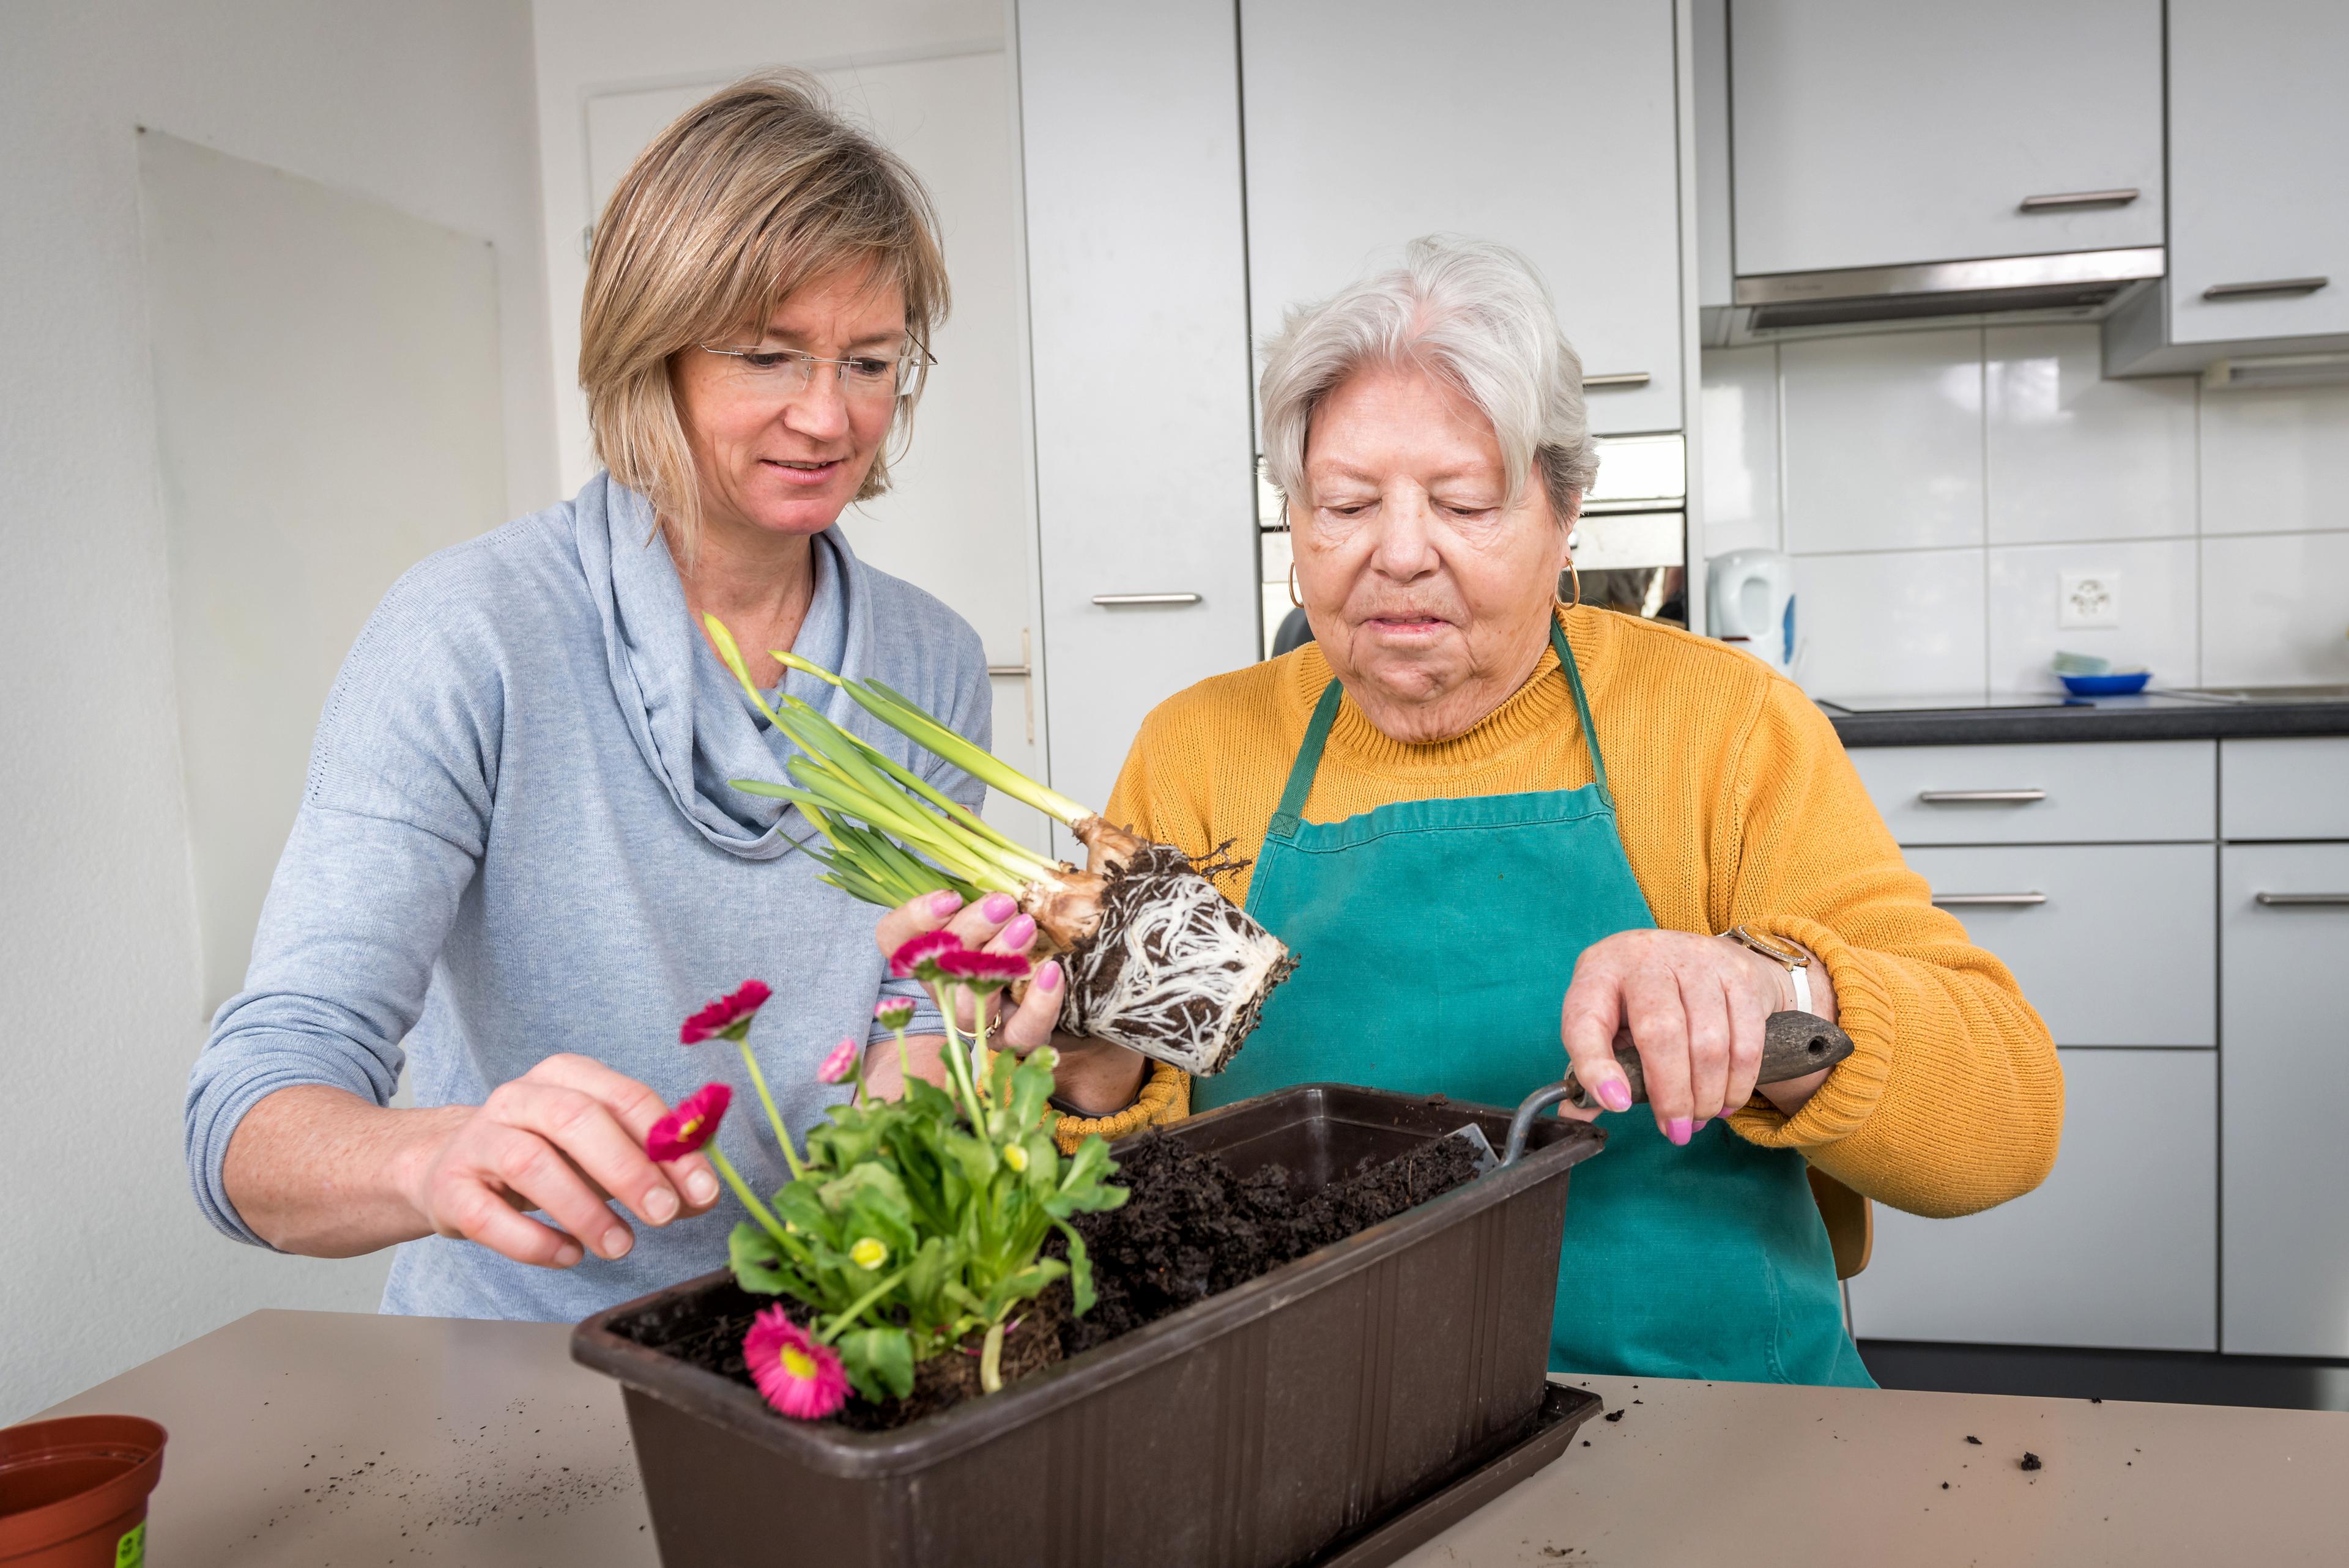 Una paziente mette dei fiori in un vaso aiutata dalla sua ergoterapista.